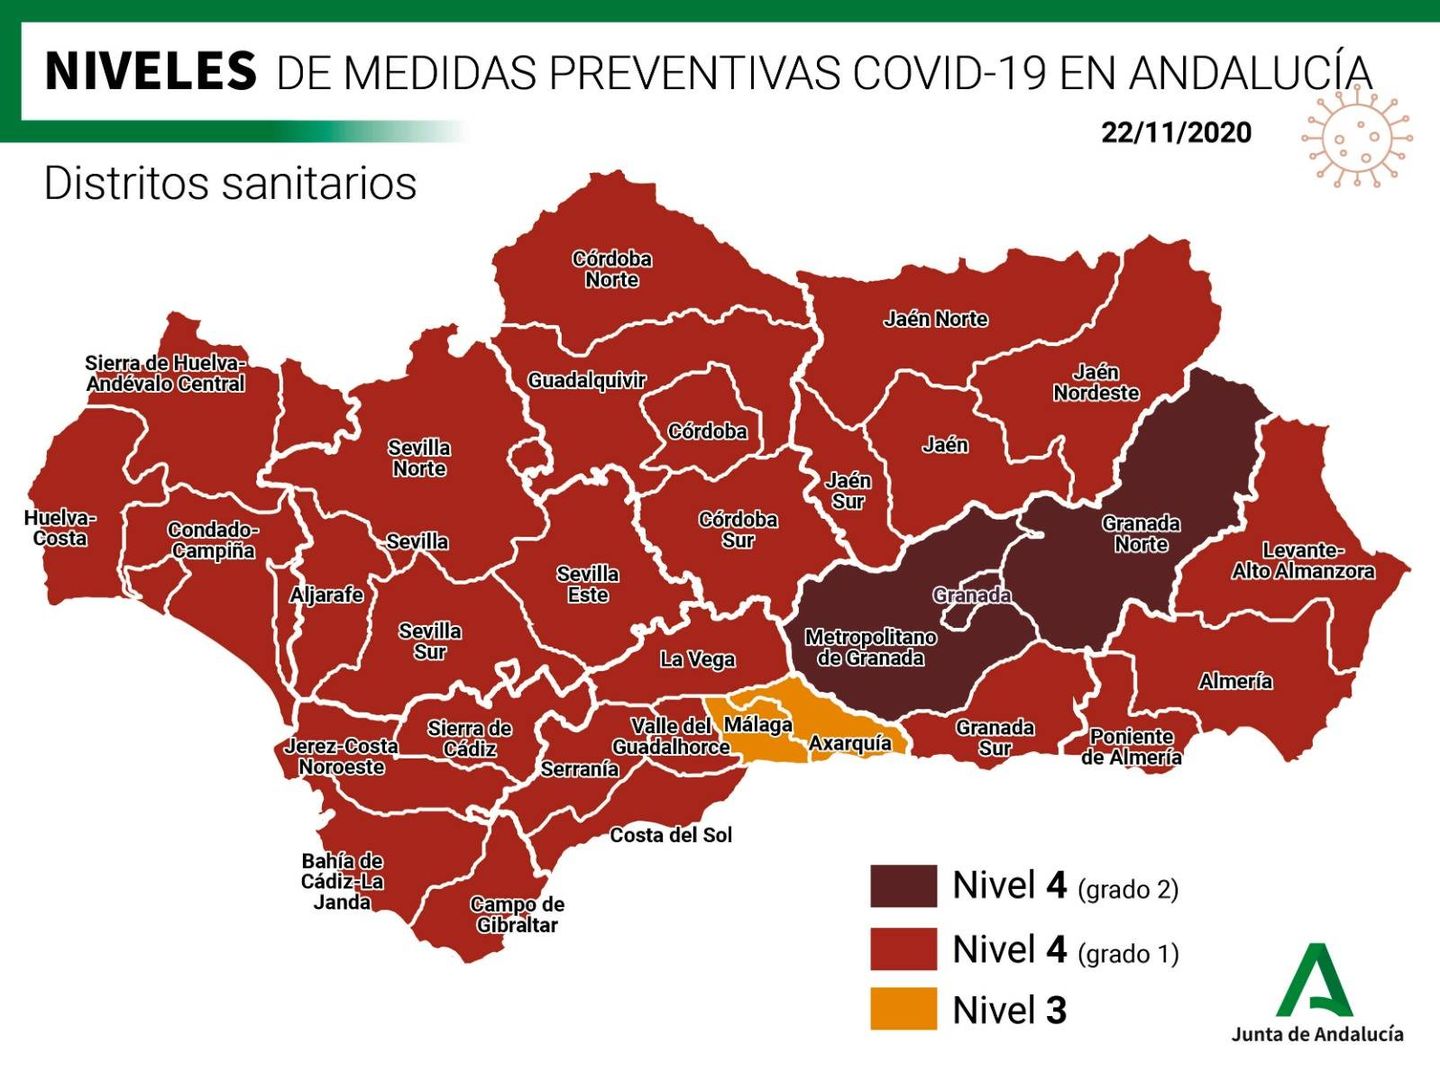 Niveles de medidas preventicas contra el covid en Andalucía anunciados el 22 de noviembre. (Junta de Andalucía)